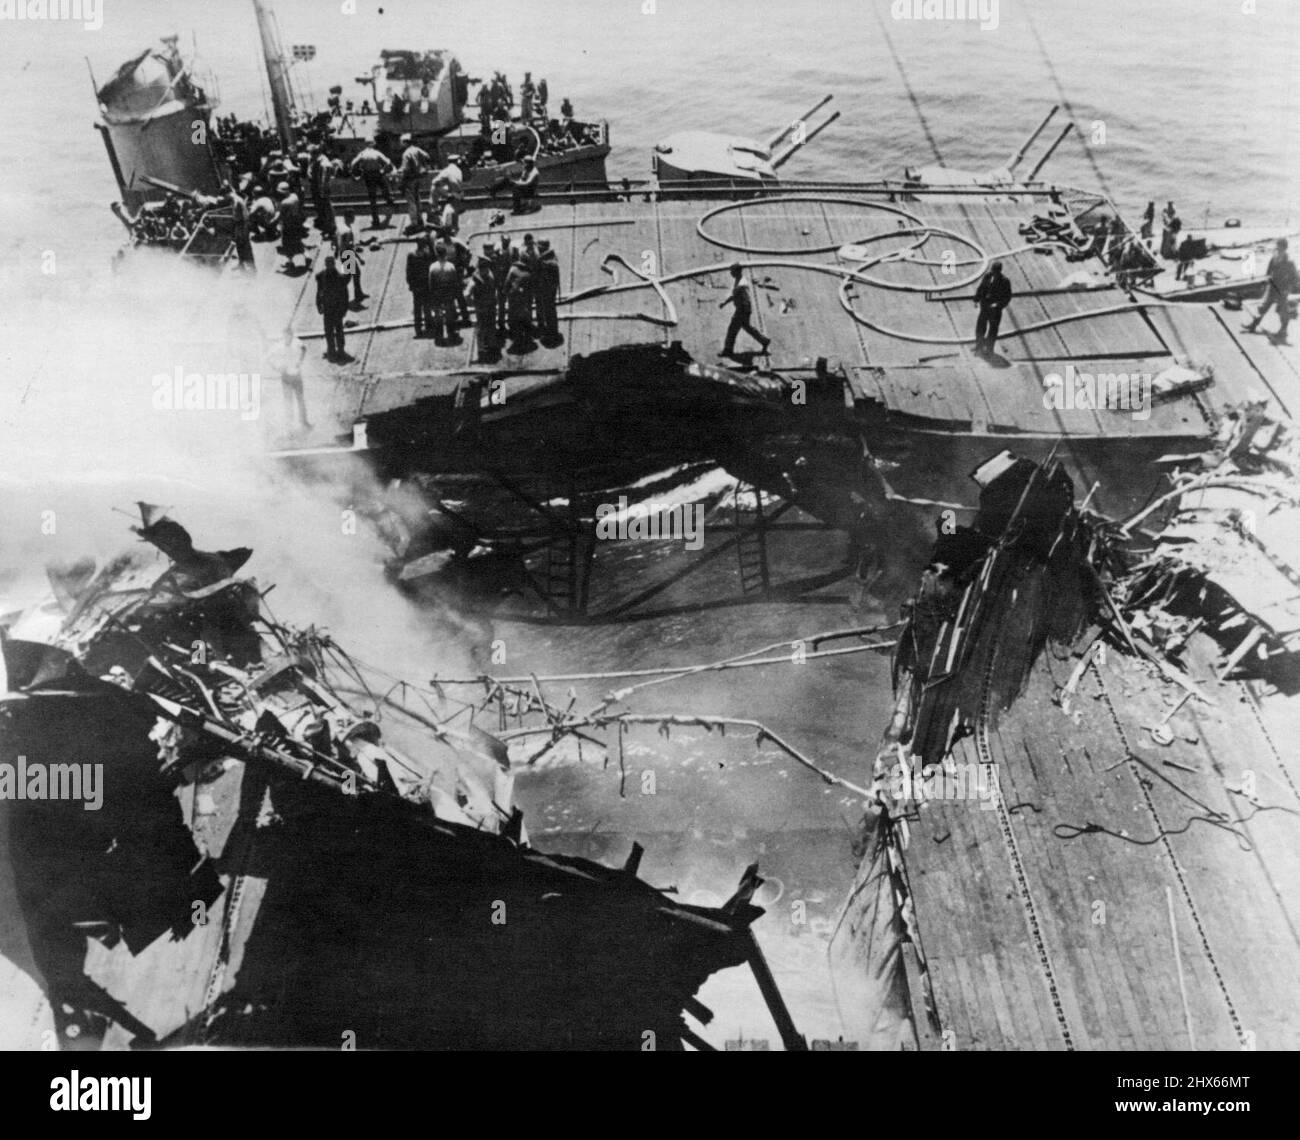 Une bombe de 500 kg, lancée par l'un des avions suicides avant qu'elle ne s'écrase sur le pont de vol, a frappé près de l'ascenseur situé au bord du pont et a pénétré dans la salle de préparation d'un pilote ci-dessous. La fumée continue de s'élever du trou béant laissé par la bombe qui a tué plusieurs pilotes du navire. 21 juin 1945. (Photo d'ACME). Banque D'Images